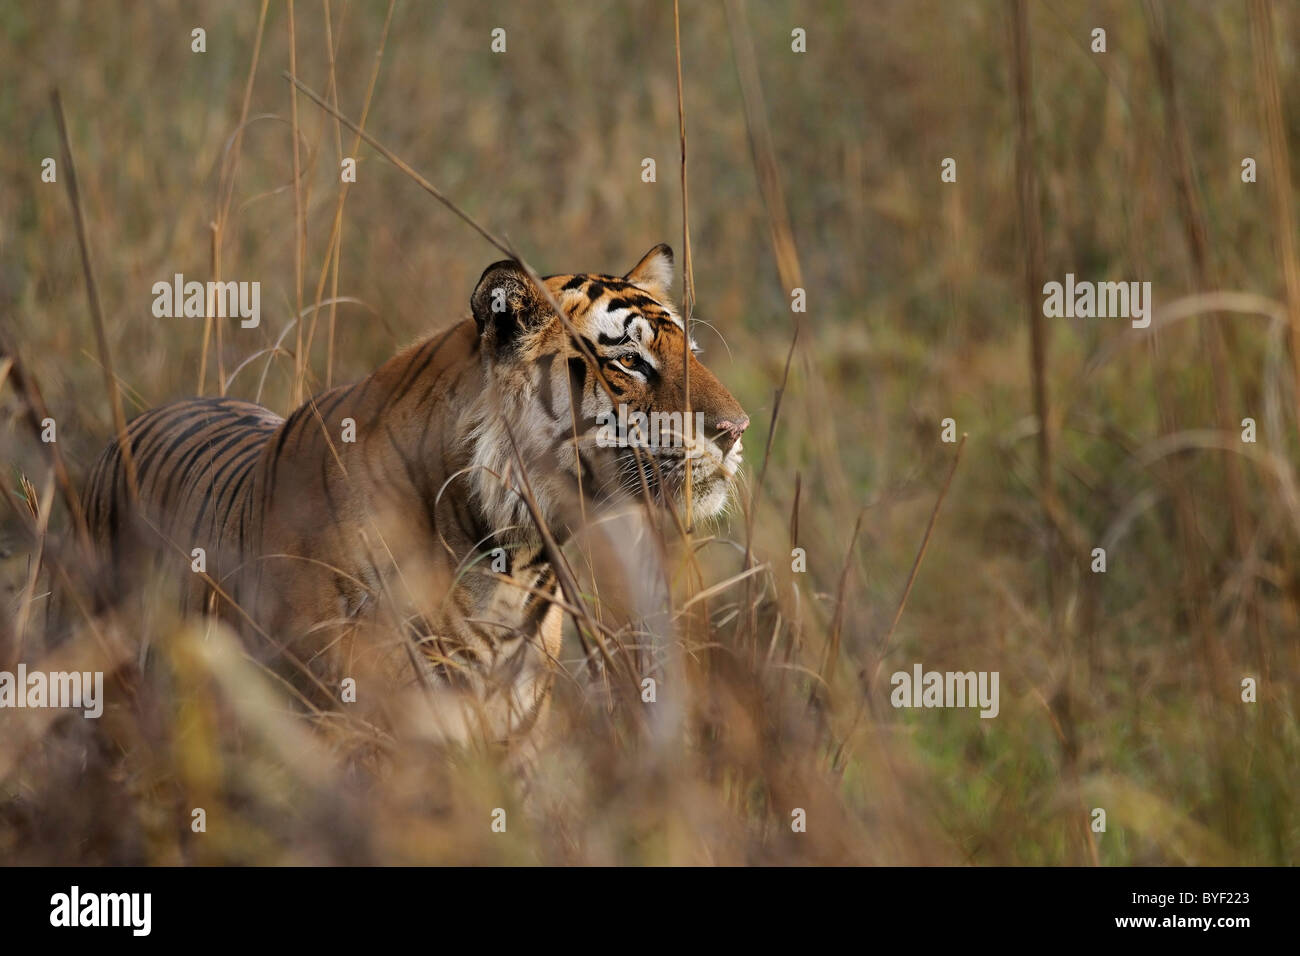 Grosse 5.5-j hrige dominante männliche Bengal Tiger beobachten Hirsch während einer Jagd auf einer Wiese in Bandhavgarh Tiger Reserve, Indien Stockfoto